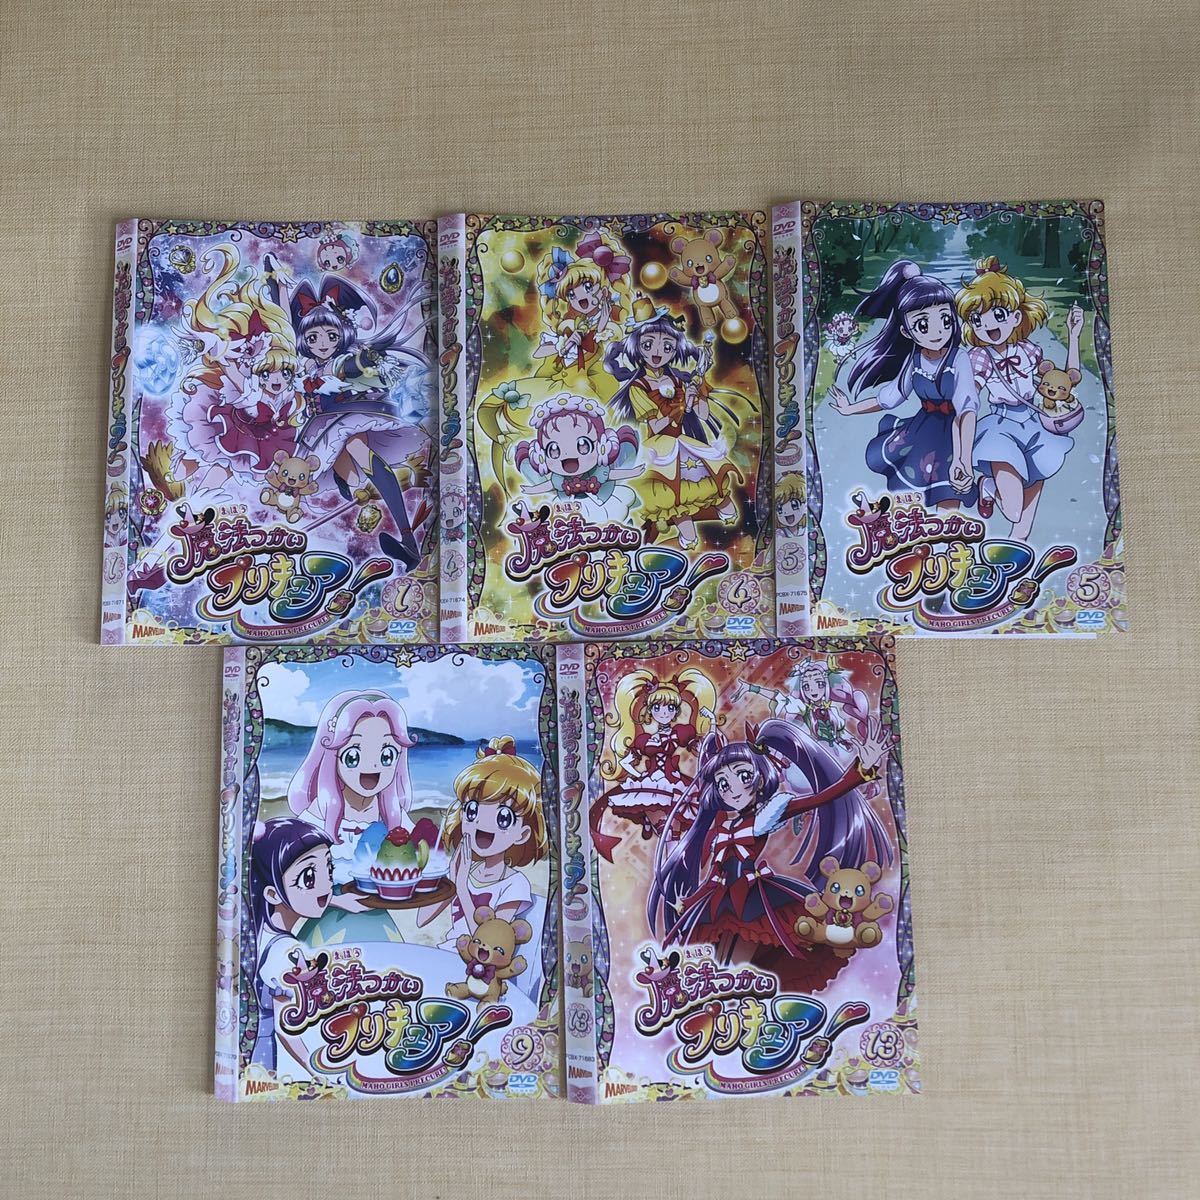 品多く キラキラ プリキュア アラモード 全16巻+劇場版DVDSET レンタル